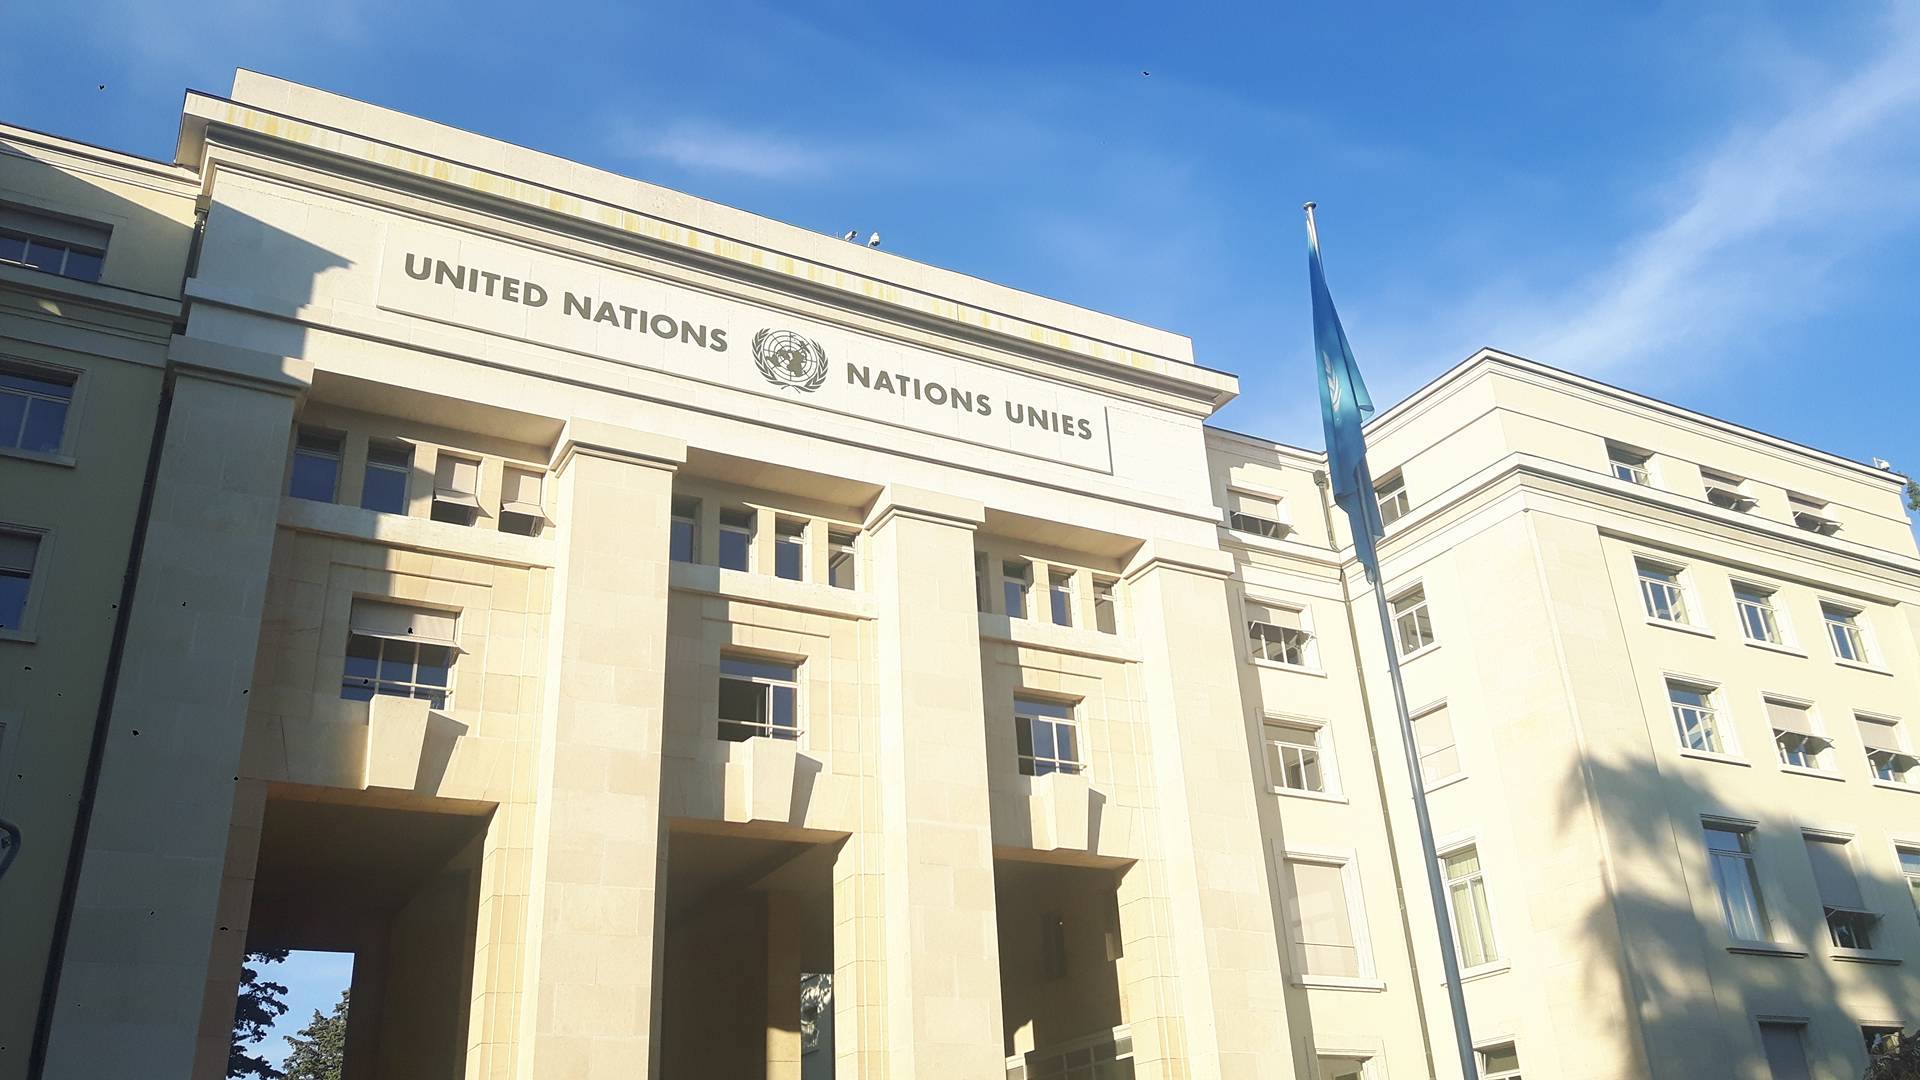 Palais des Nations with the UN flag